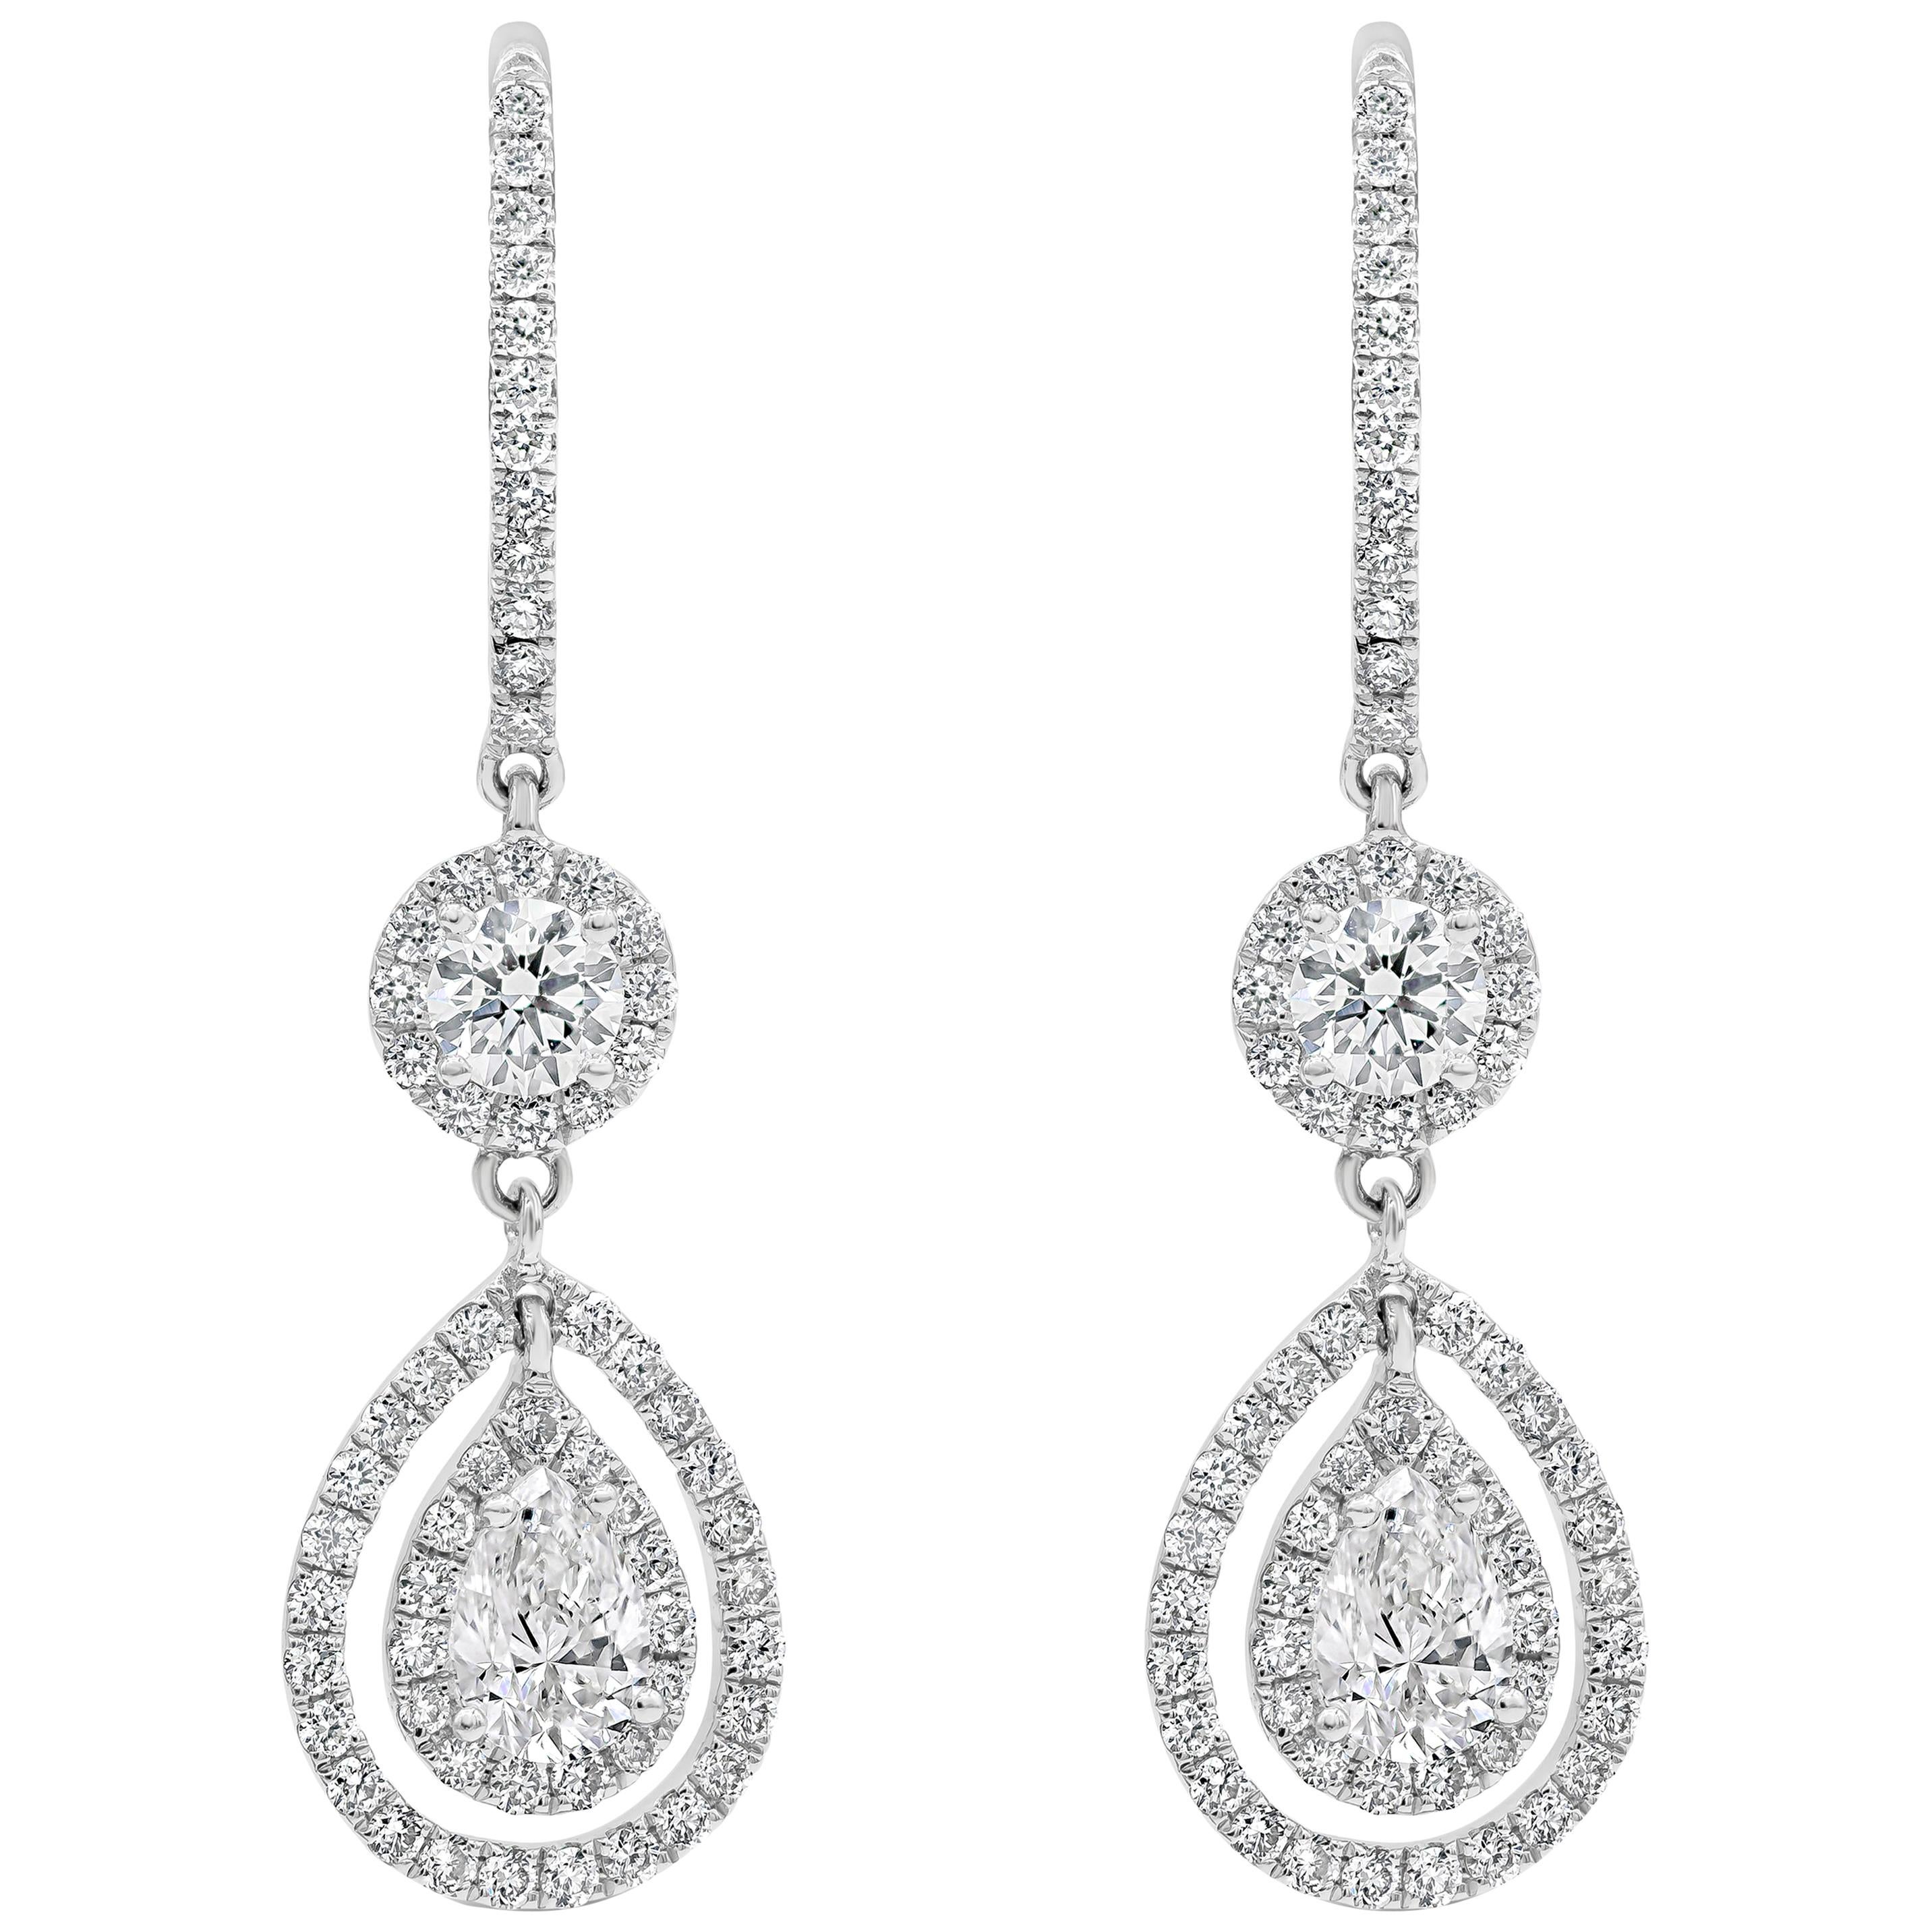 Roman Malakov 1.71 Carats Total Diamond Double Halo Dangle Earrings